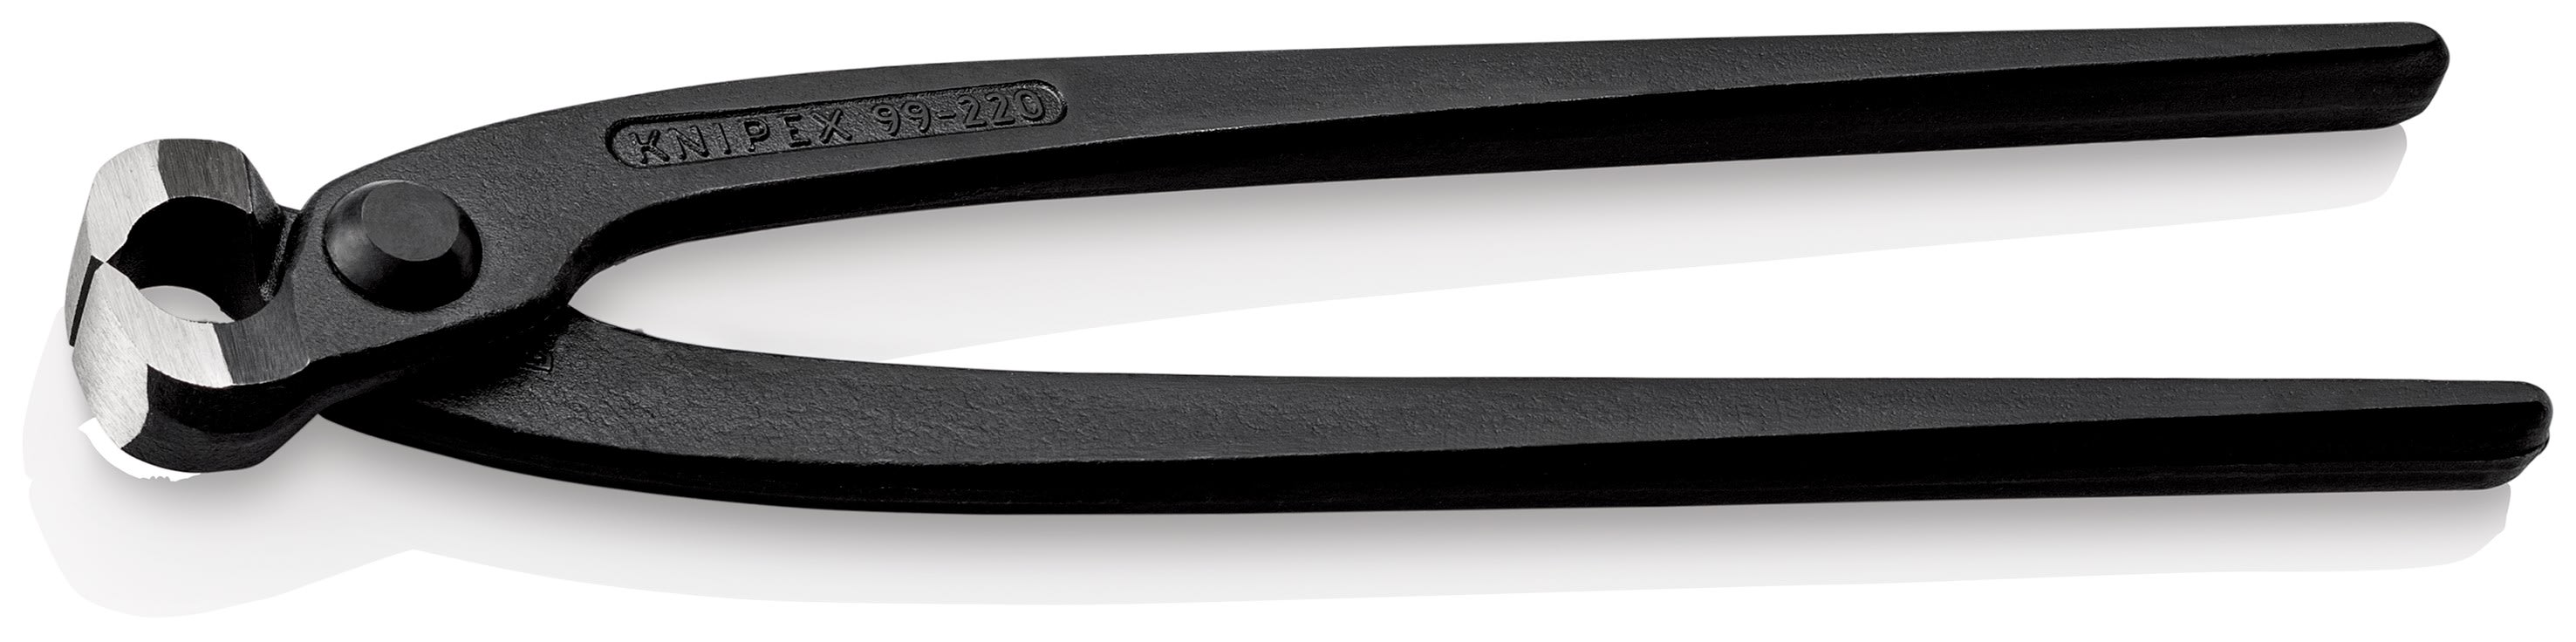 KNIPEX - Tenaille russe 250mm noire - Ecartement reduit a 21mm entre les bras